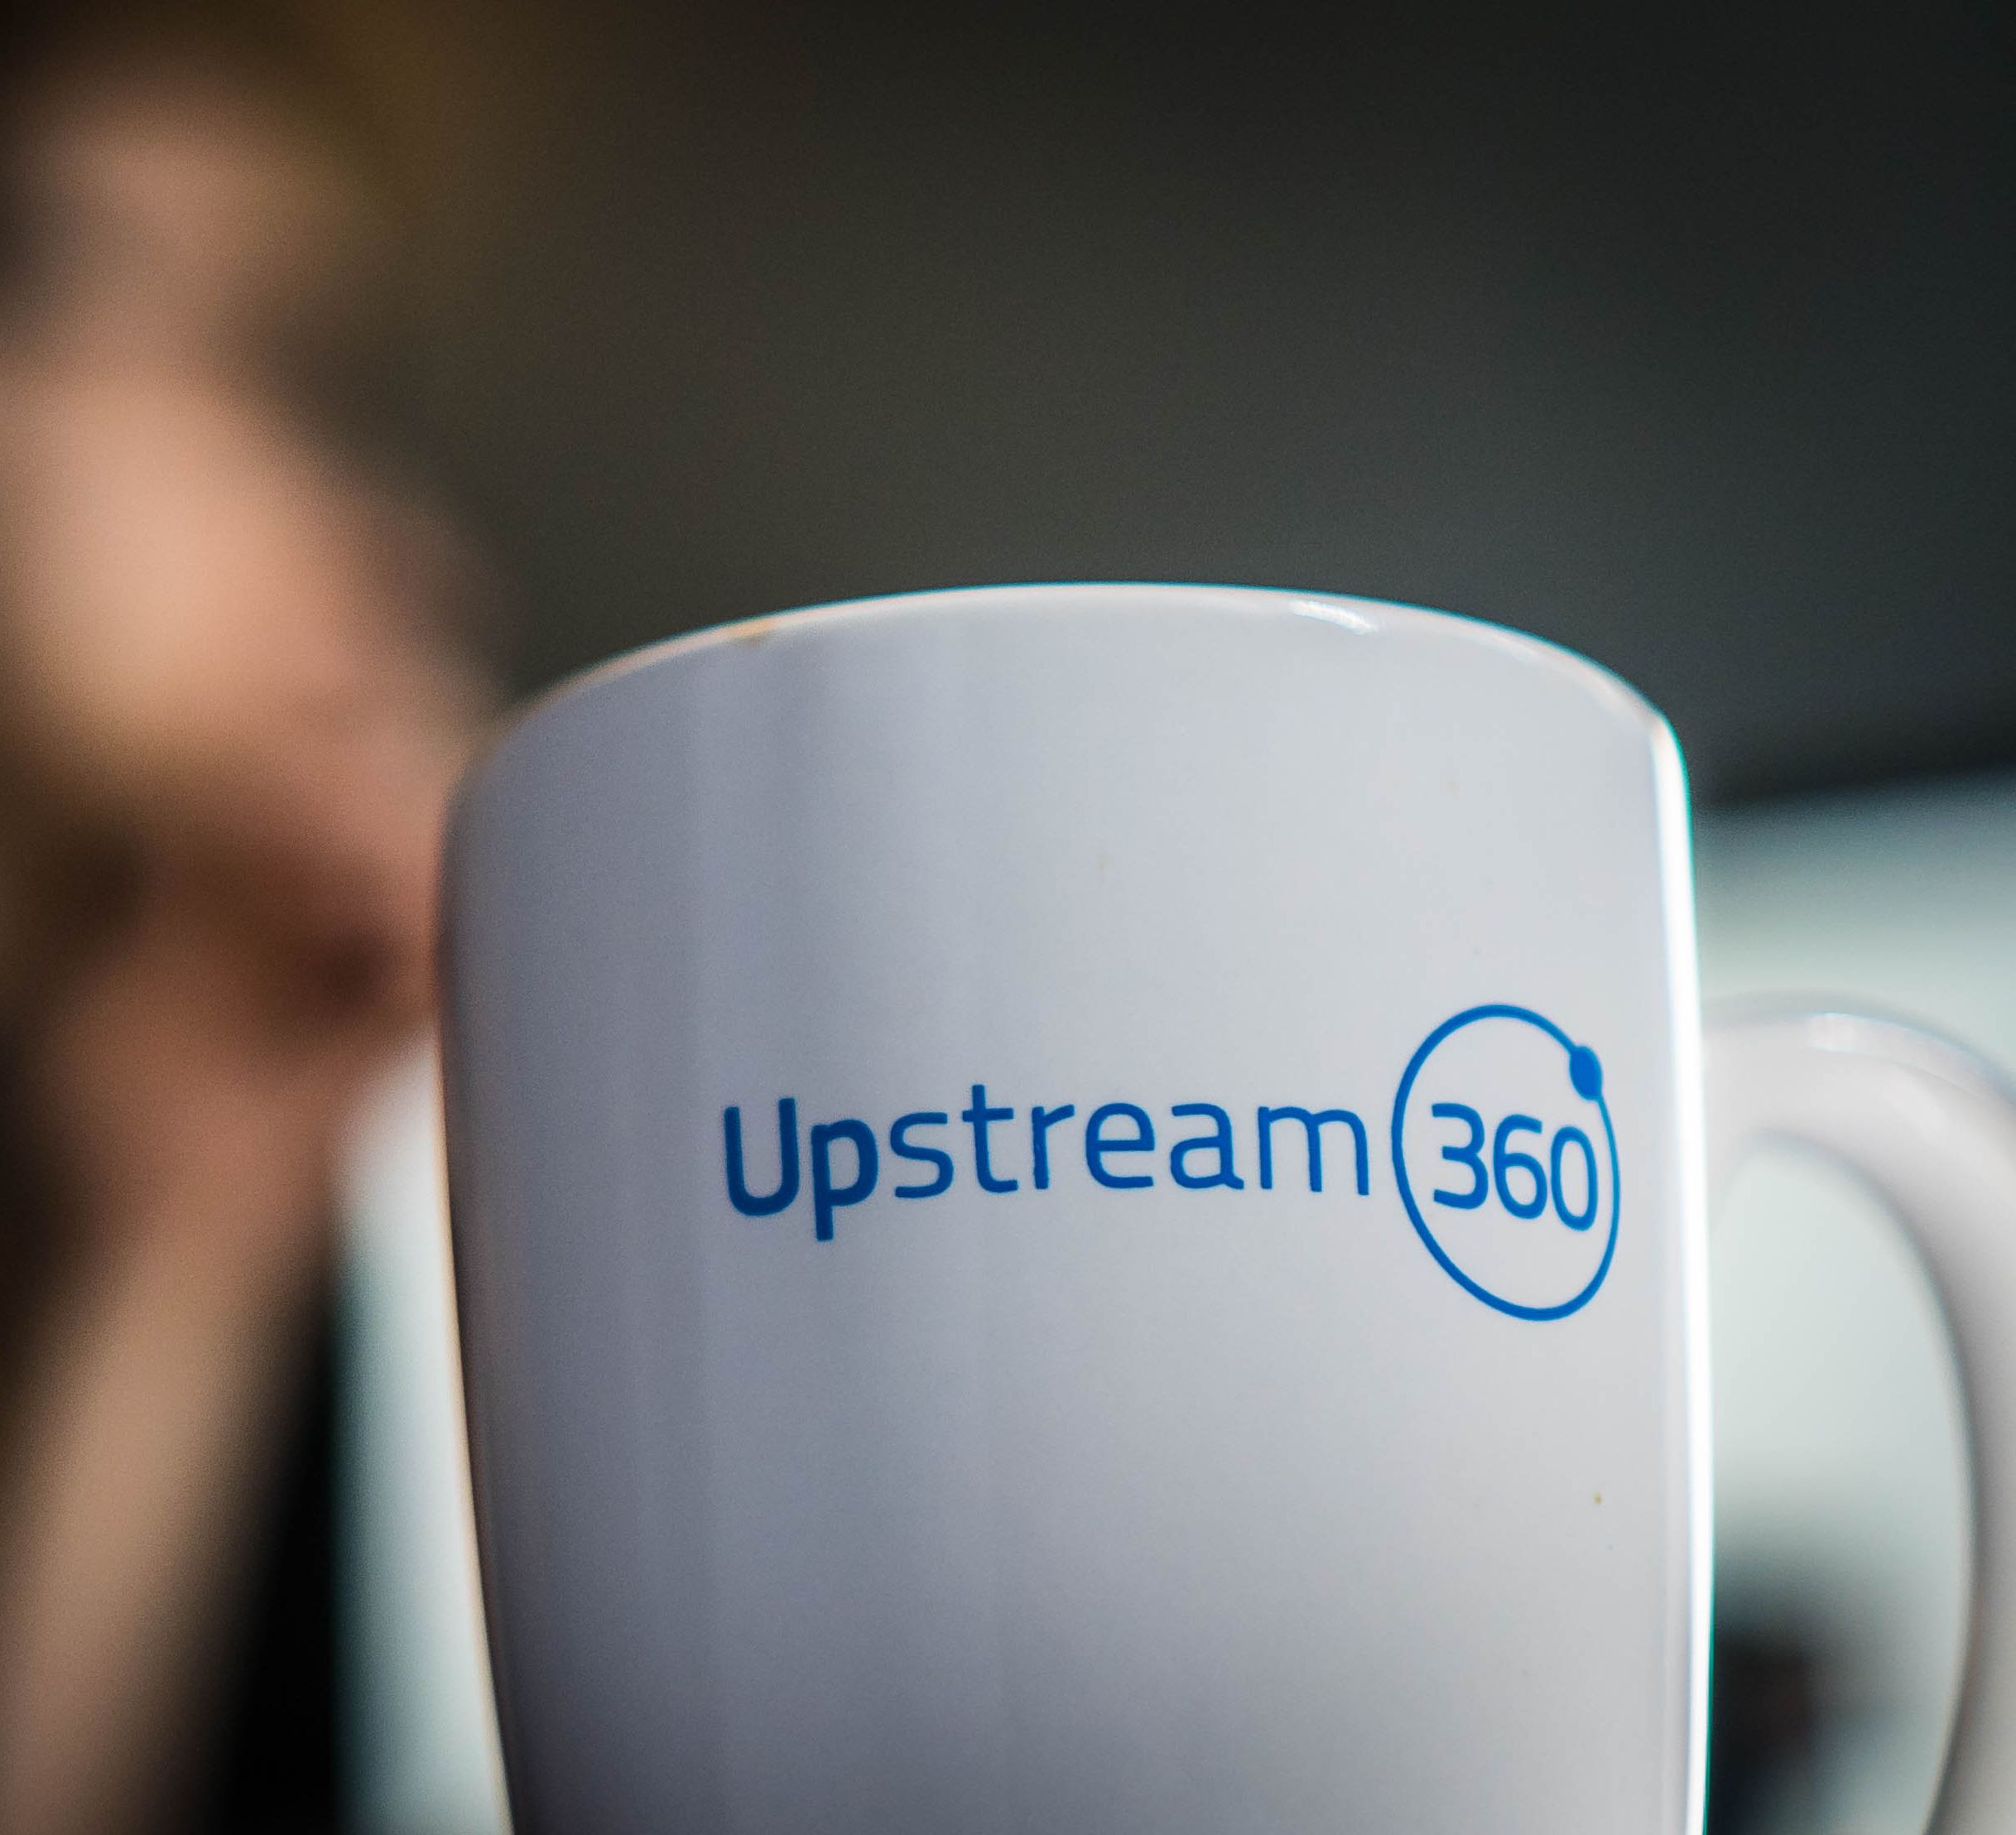 upstream360 coffee mug